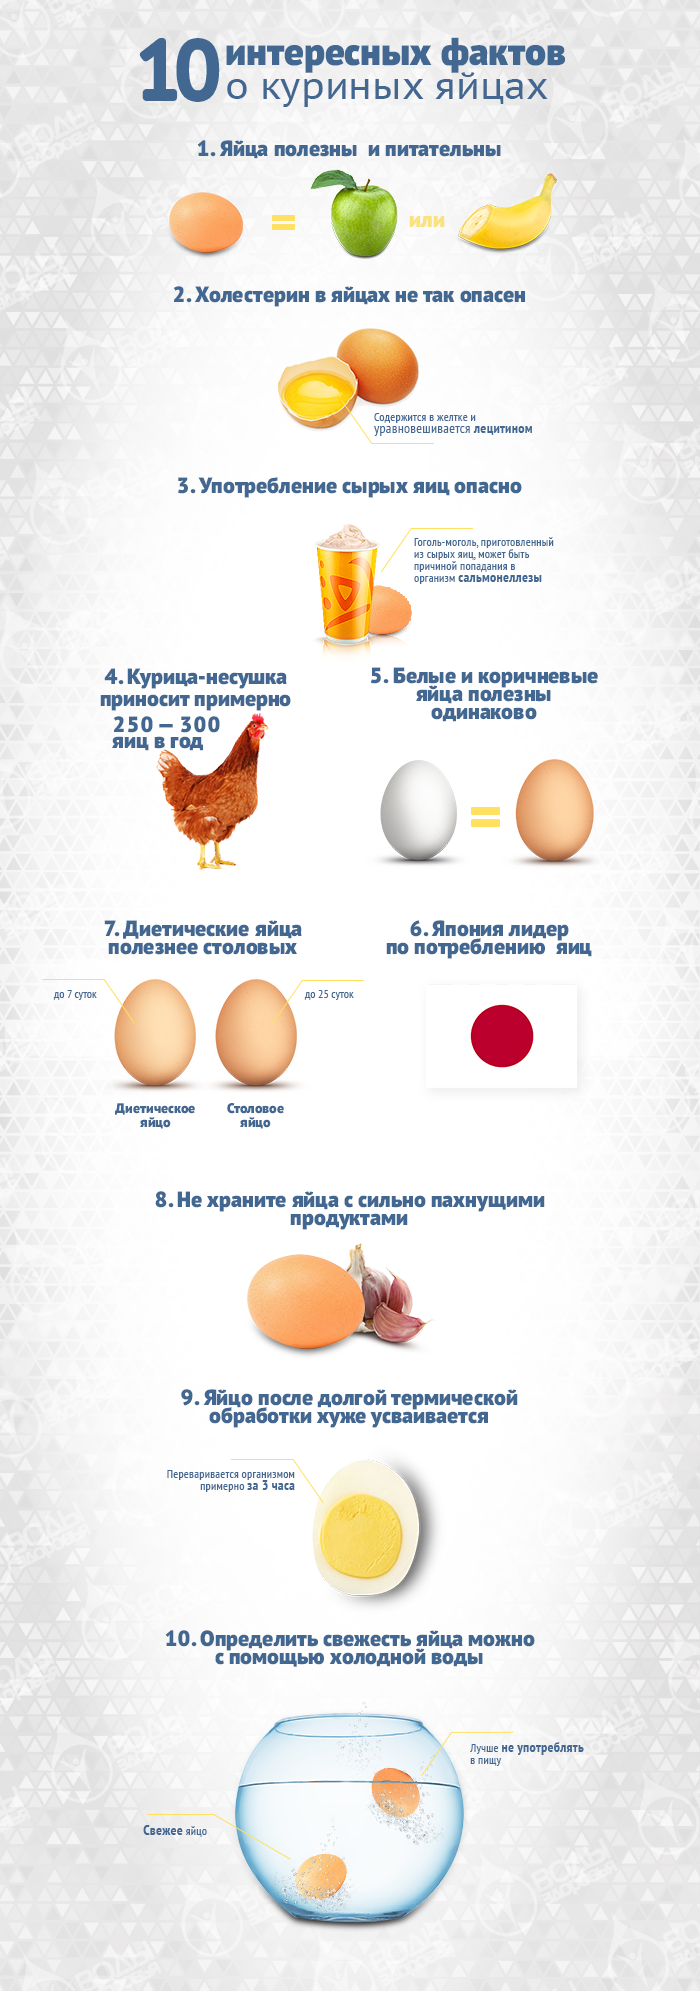 От чего зависит цвет скорлупы куриного яйца?